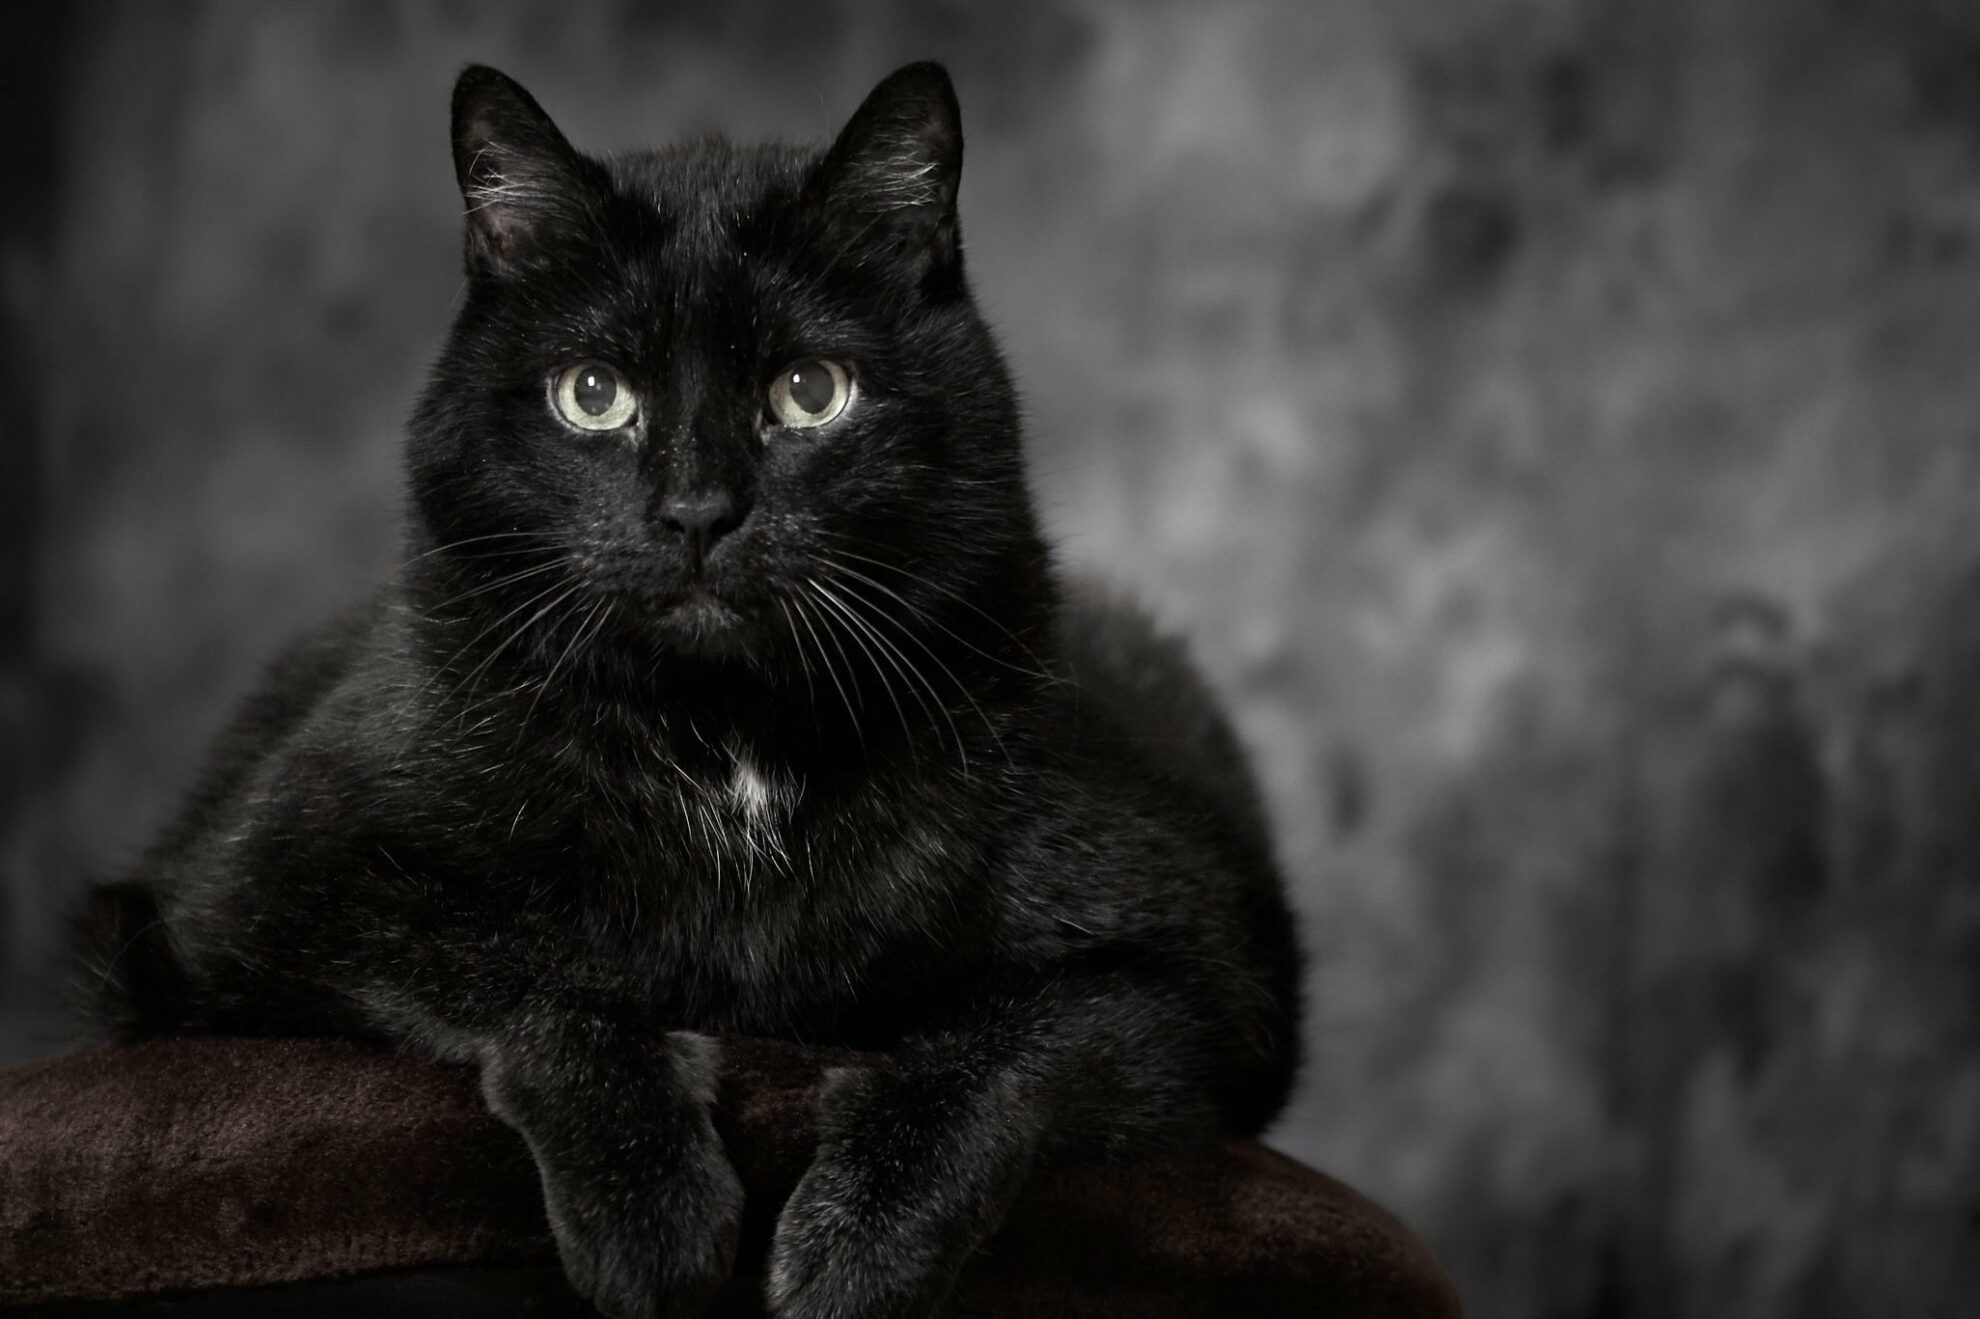 Juodos katės yra turbūt labiausiai prietarais apipinti ir daugiausiai dėl to nukentėję gyvūnėliai. Daugybė žmonių jas sieja su bloga lemtimi, o juodai katei perbėgus kelią tiki, kad tai – nieko gero nežadantis ženklas.